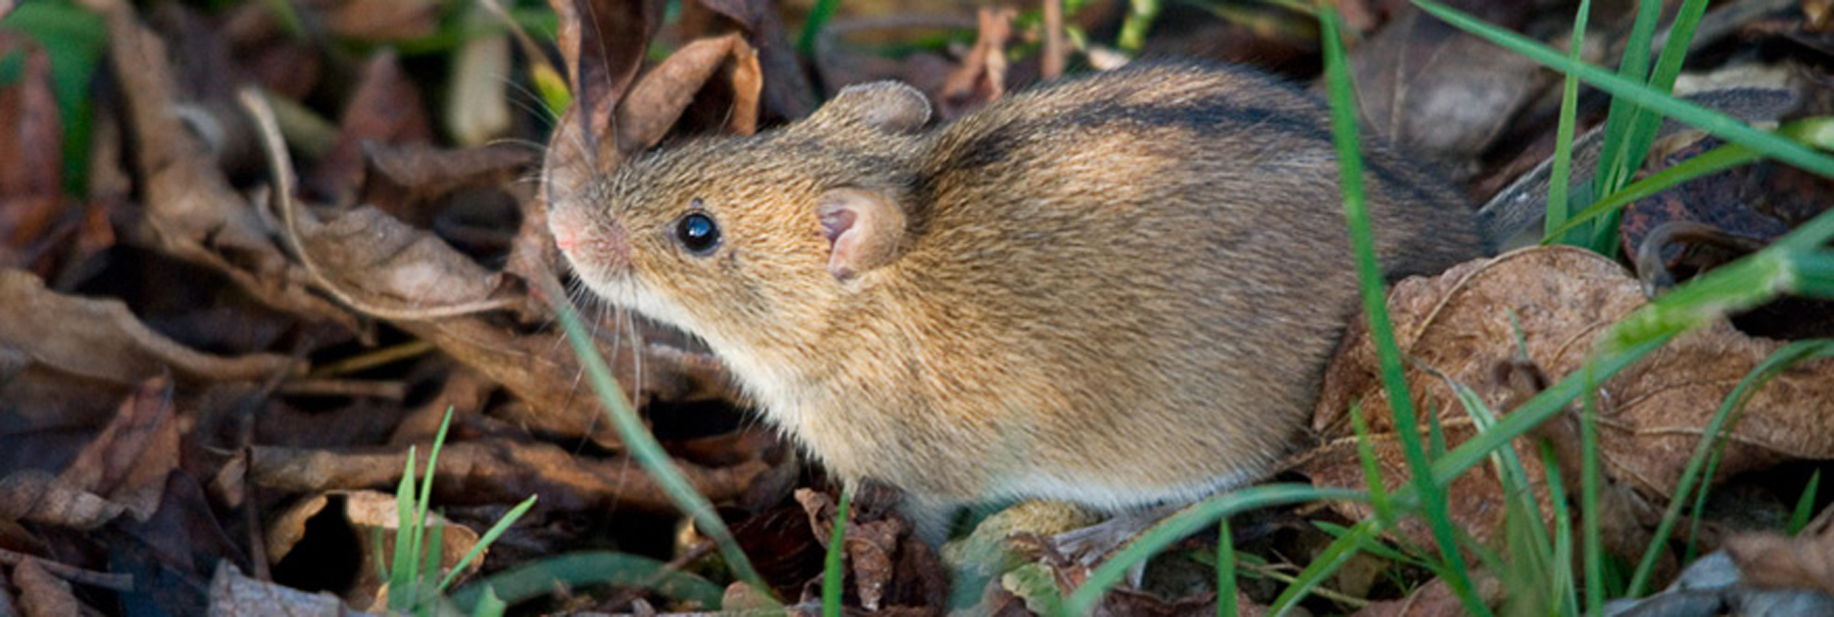 Мыши живущие в лесу. Apodemus agrarius. Мышь Apodemus agrarius. Полевая мышь (мышь-полёвка). Мышь Лесная полевка.